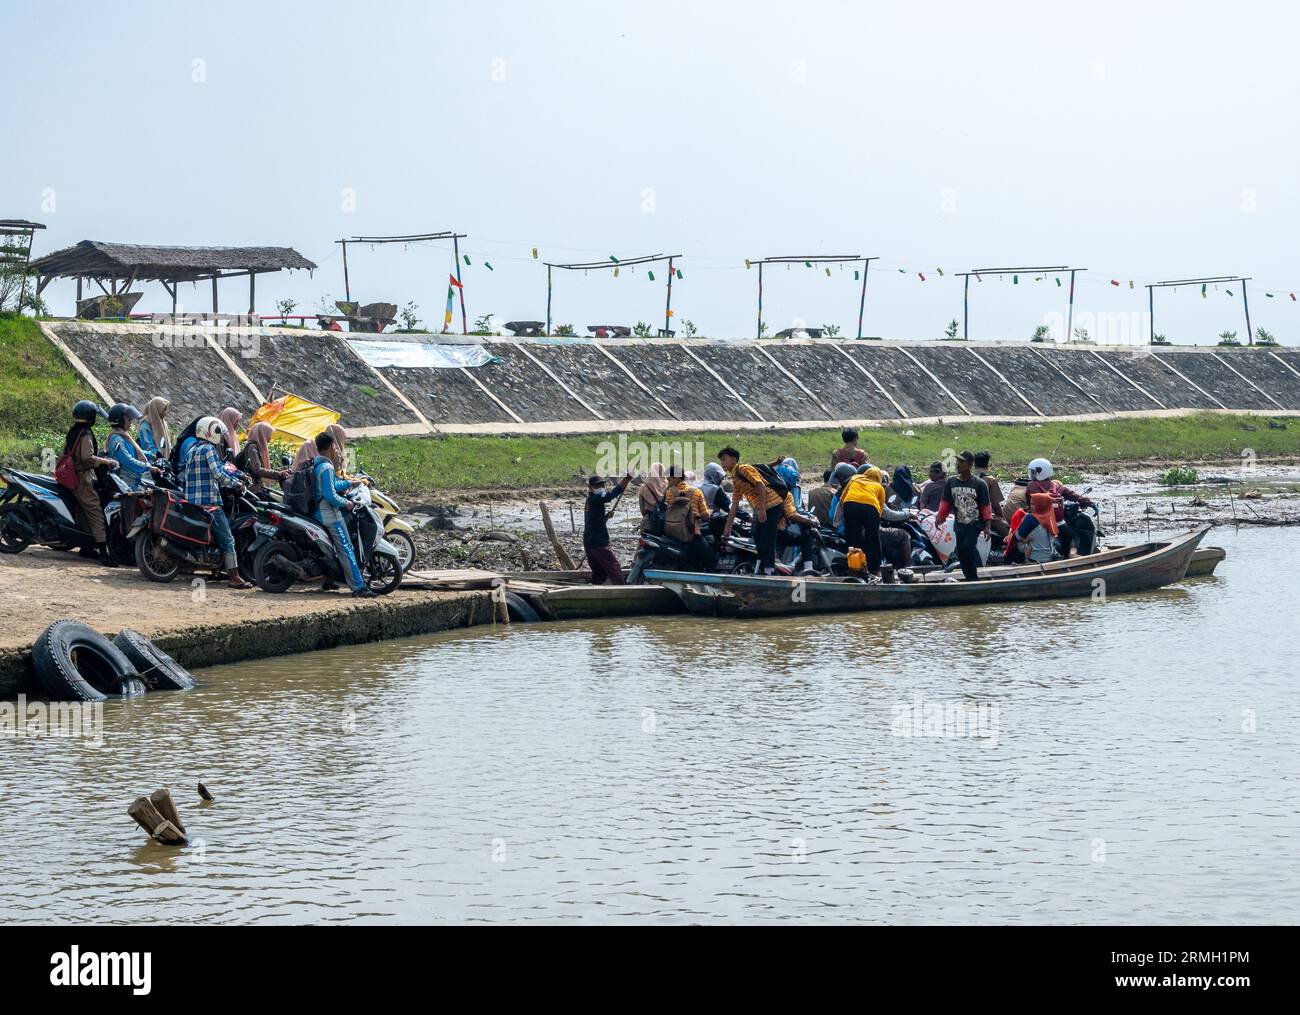 Persone e motociclette sono bloccate sui piccoli traghetti. Sumatra, Indonesia. Foto Stock